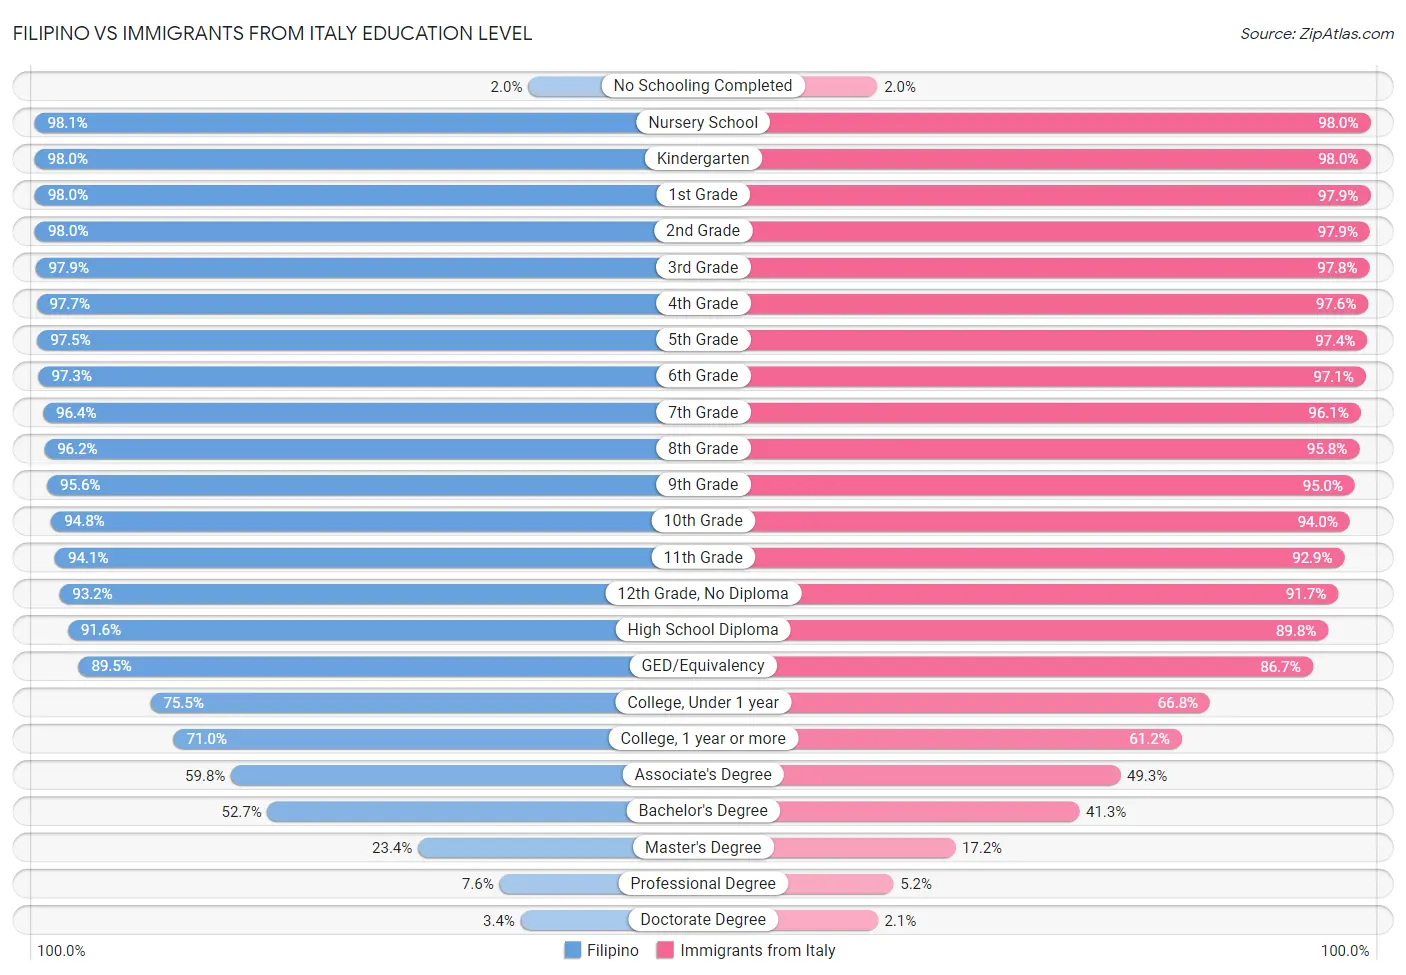 Filipino vs Immigrants from Italy Education Level